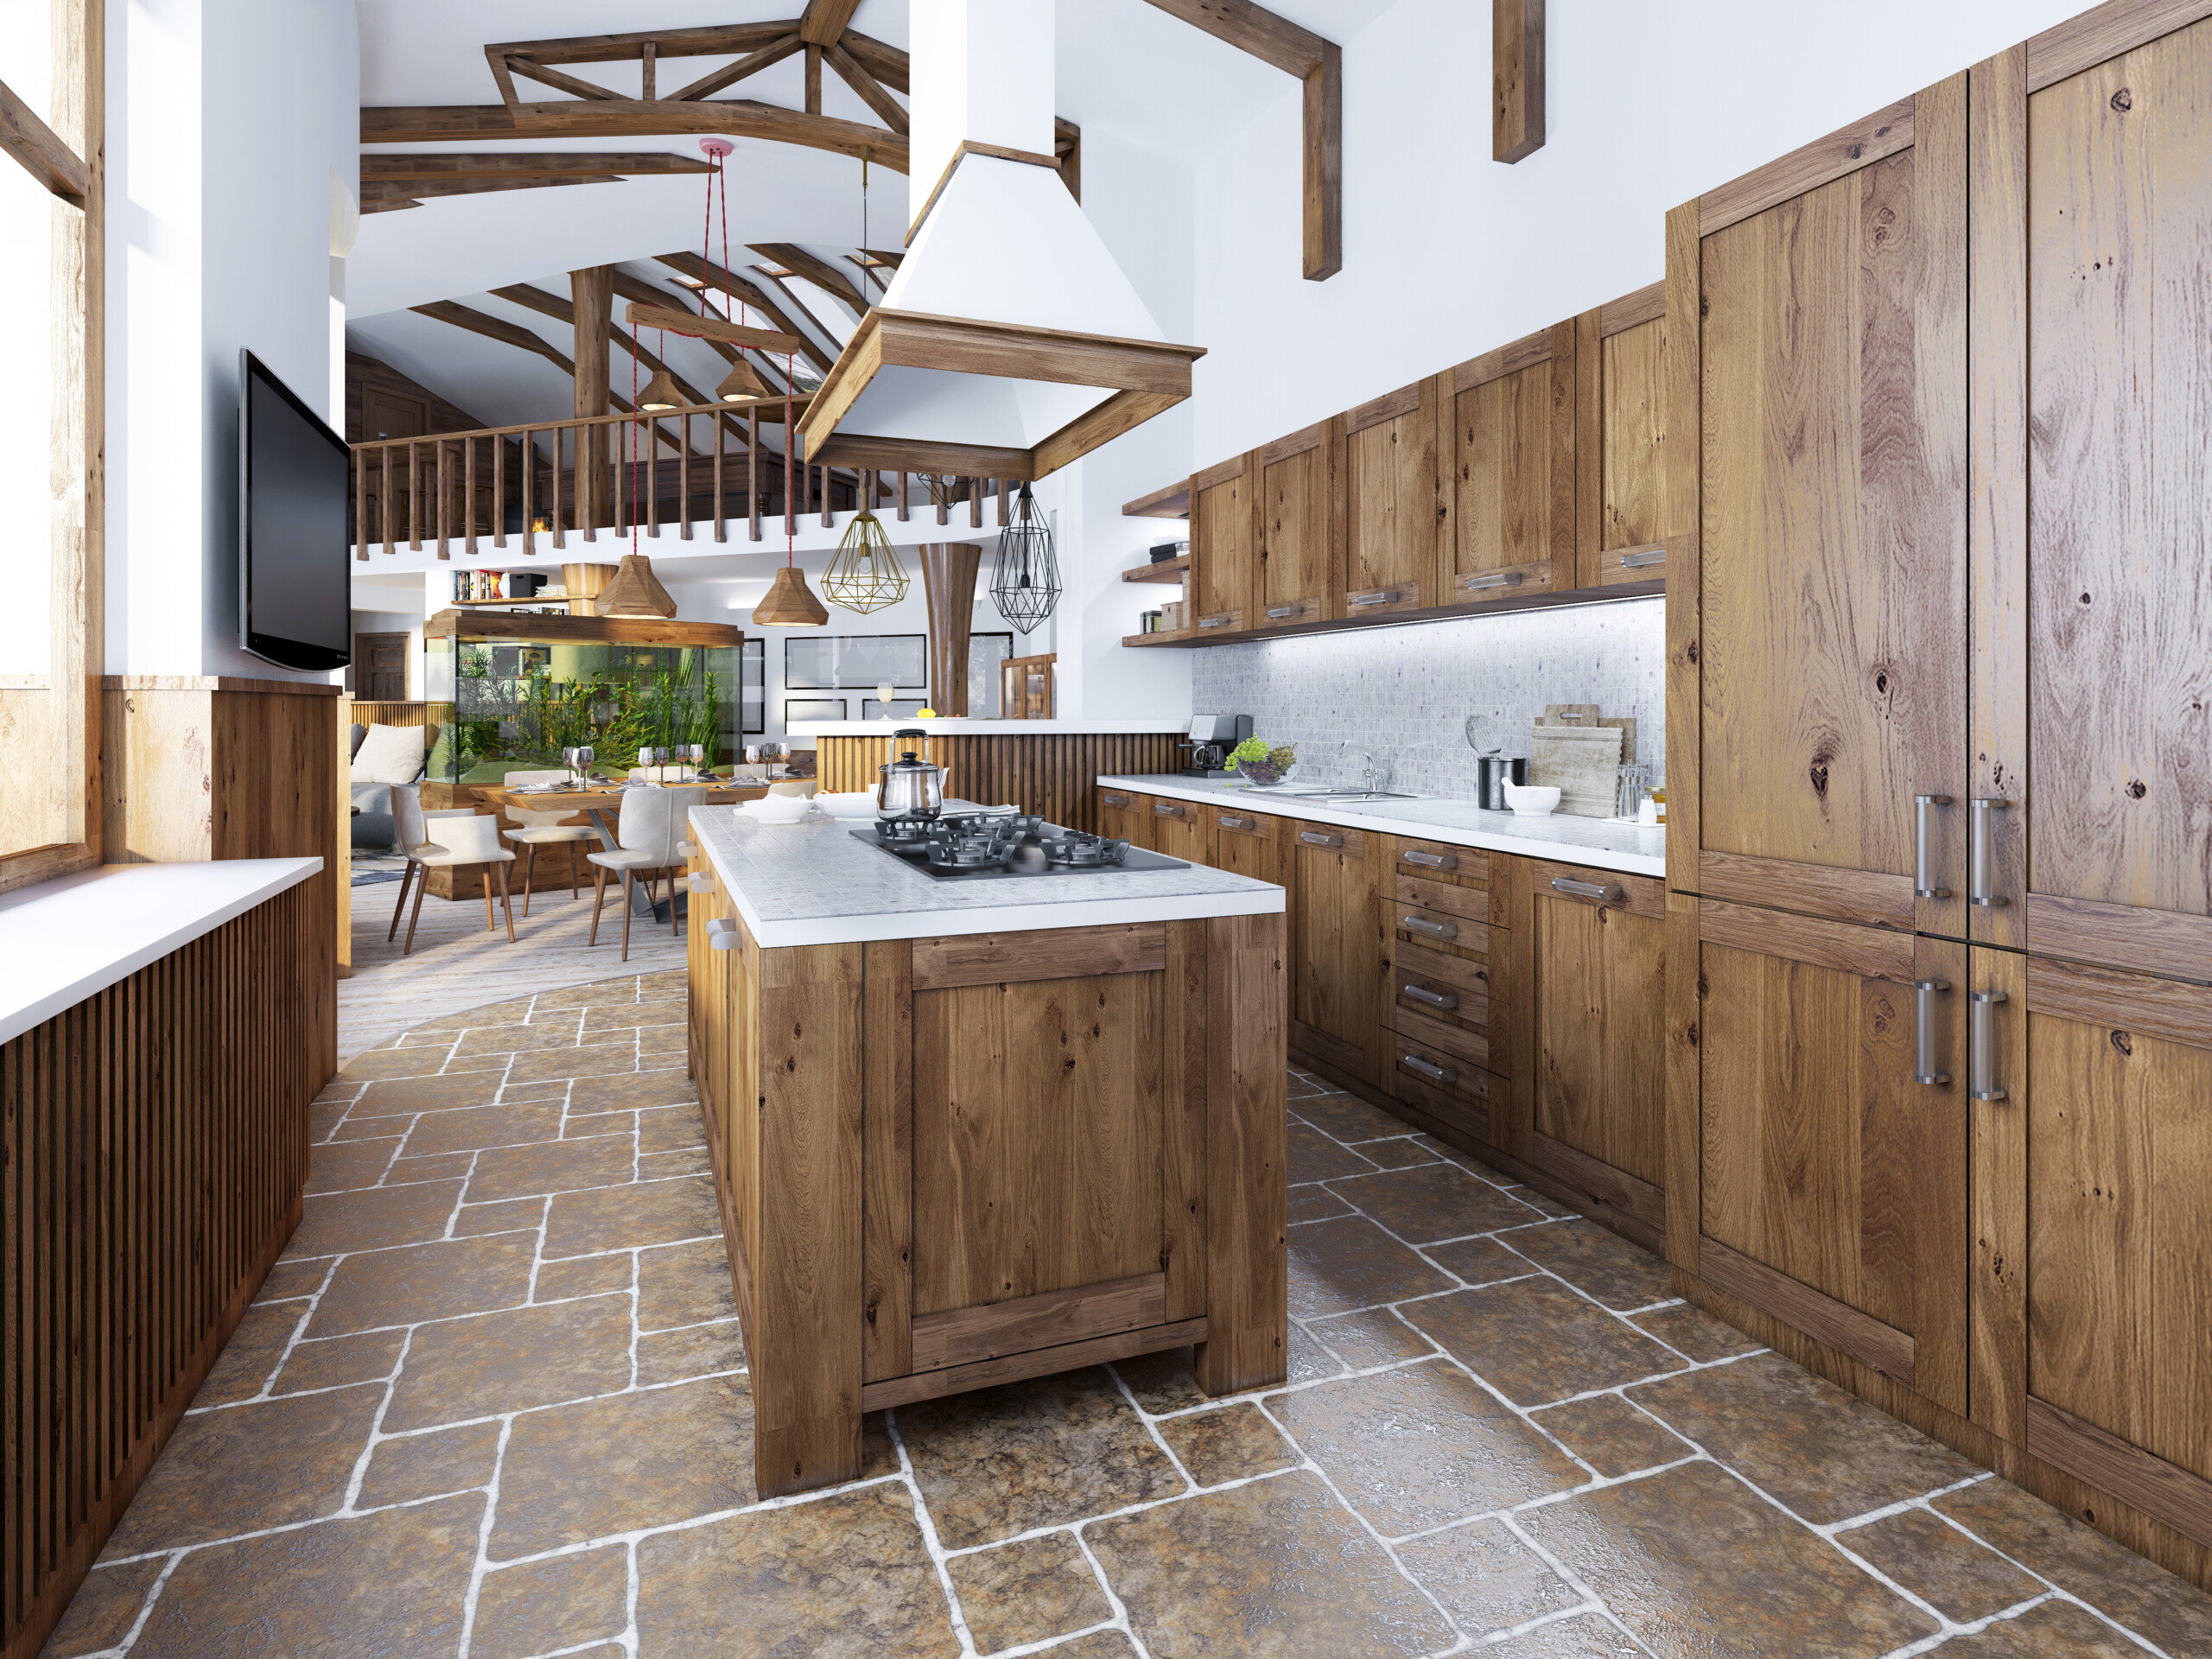 Cute Dishrack  Home kitchens, Shabby chic kitchen, Cottage kitchens